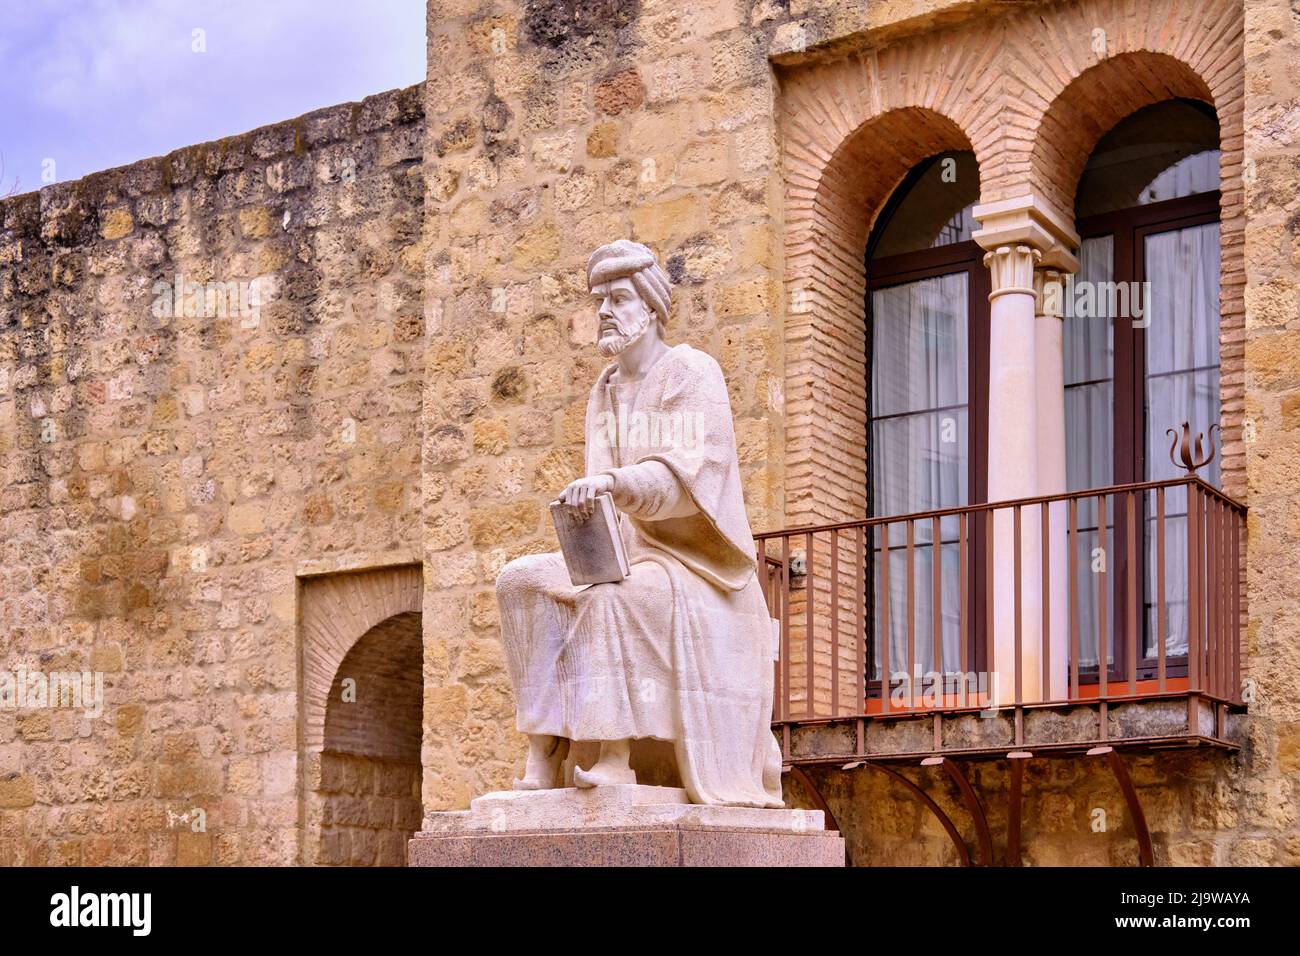 Die Statue des Cordoban arabischen Schriftstellers und der einflussreichste Philosoph der arabischen Welt, der große Averroes, 12. Jahrhundert n. Chr. Cordoba, Andaluc Stockfoto